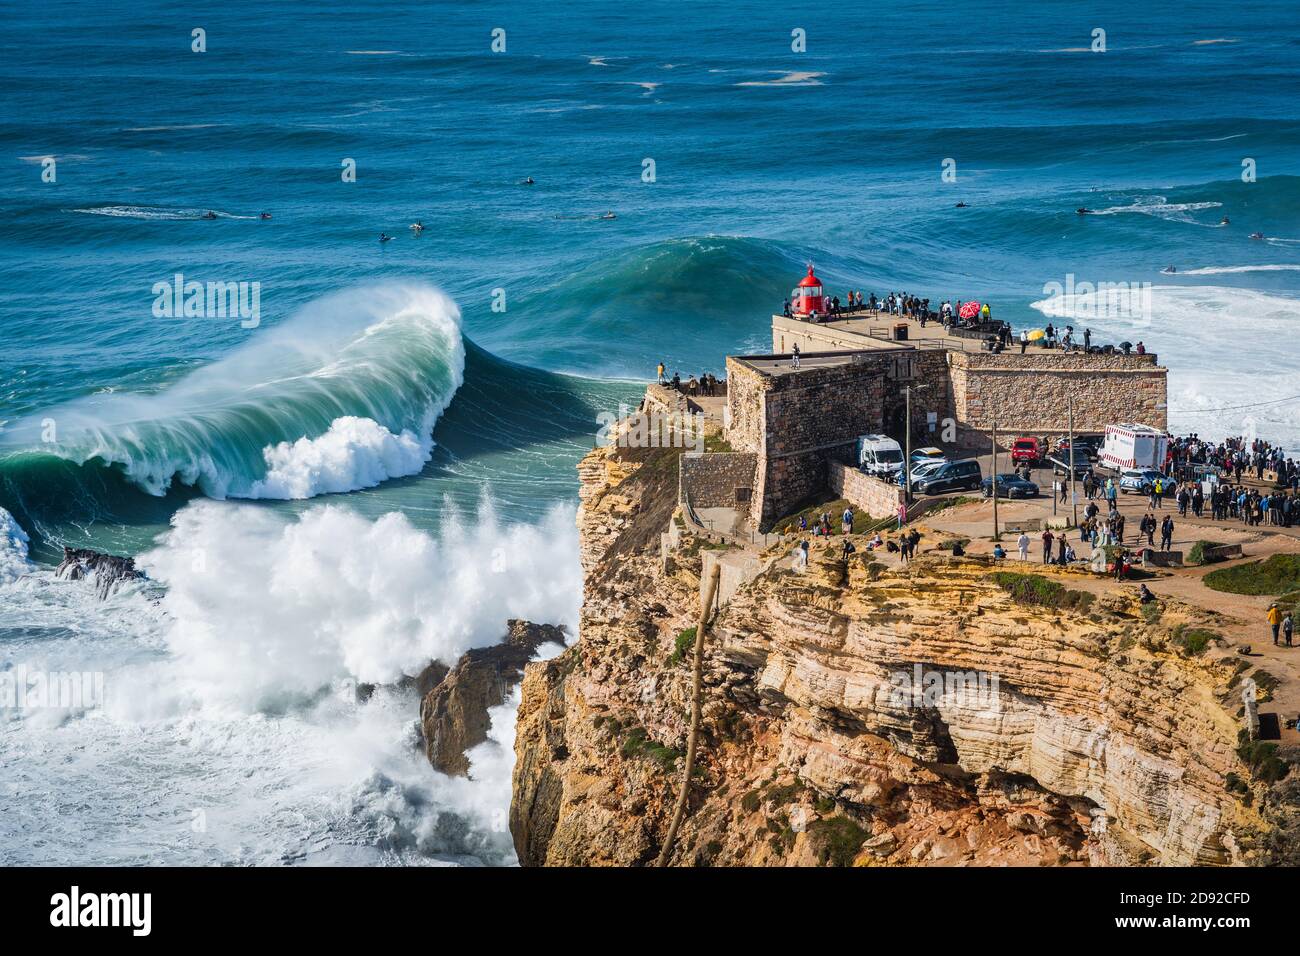 Große Wellen schlagen in der Nähe des Leuchtturms Fort von Nazare in Nazare, Portugal. Nazare ist bekannt dafür, die größten Wellen der Welt zu haben. Stockfoto